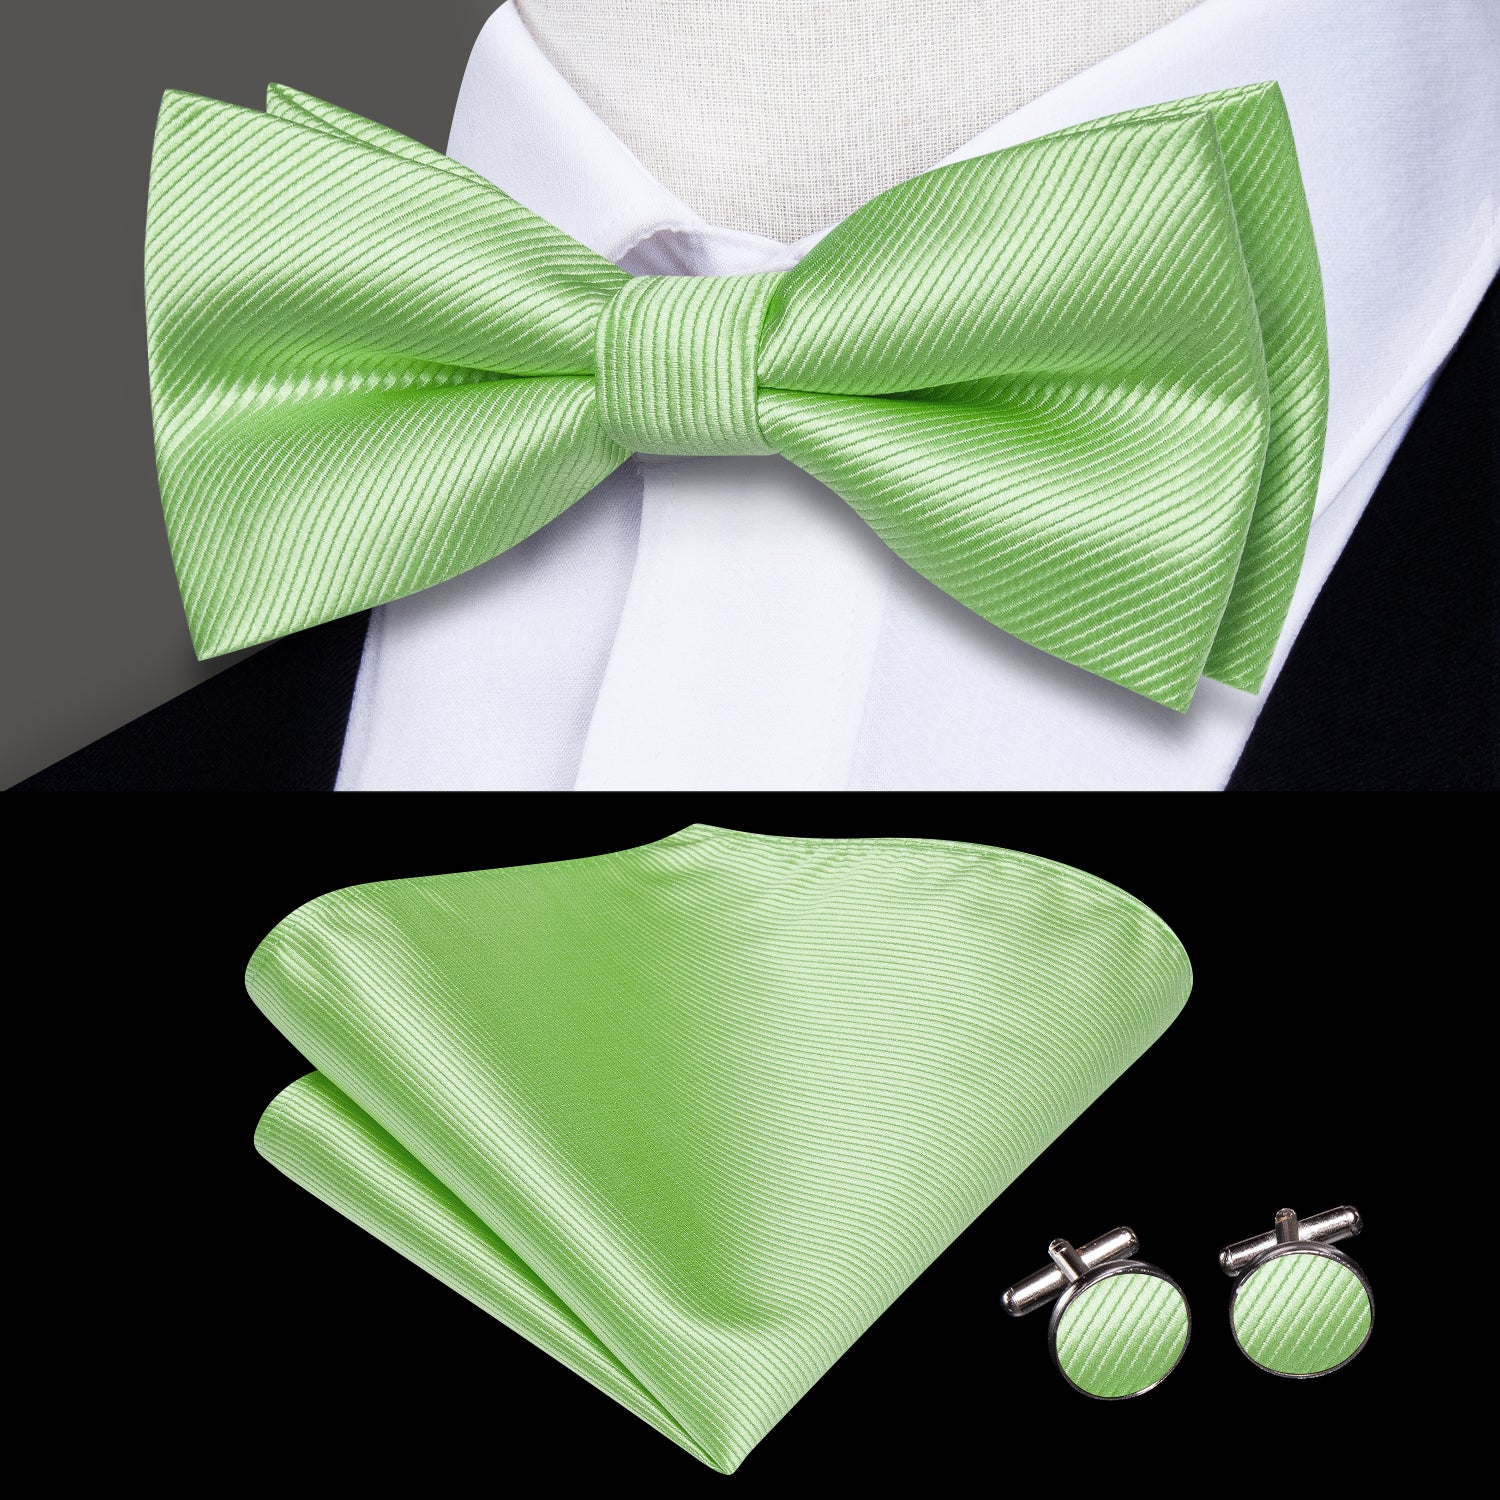 Light Green Striped Pre-tied Bow Tie Hanky Cufflinks Set